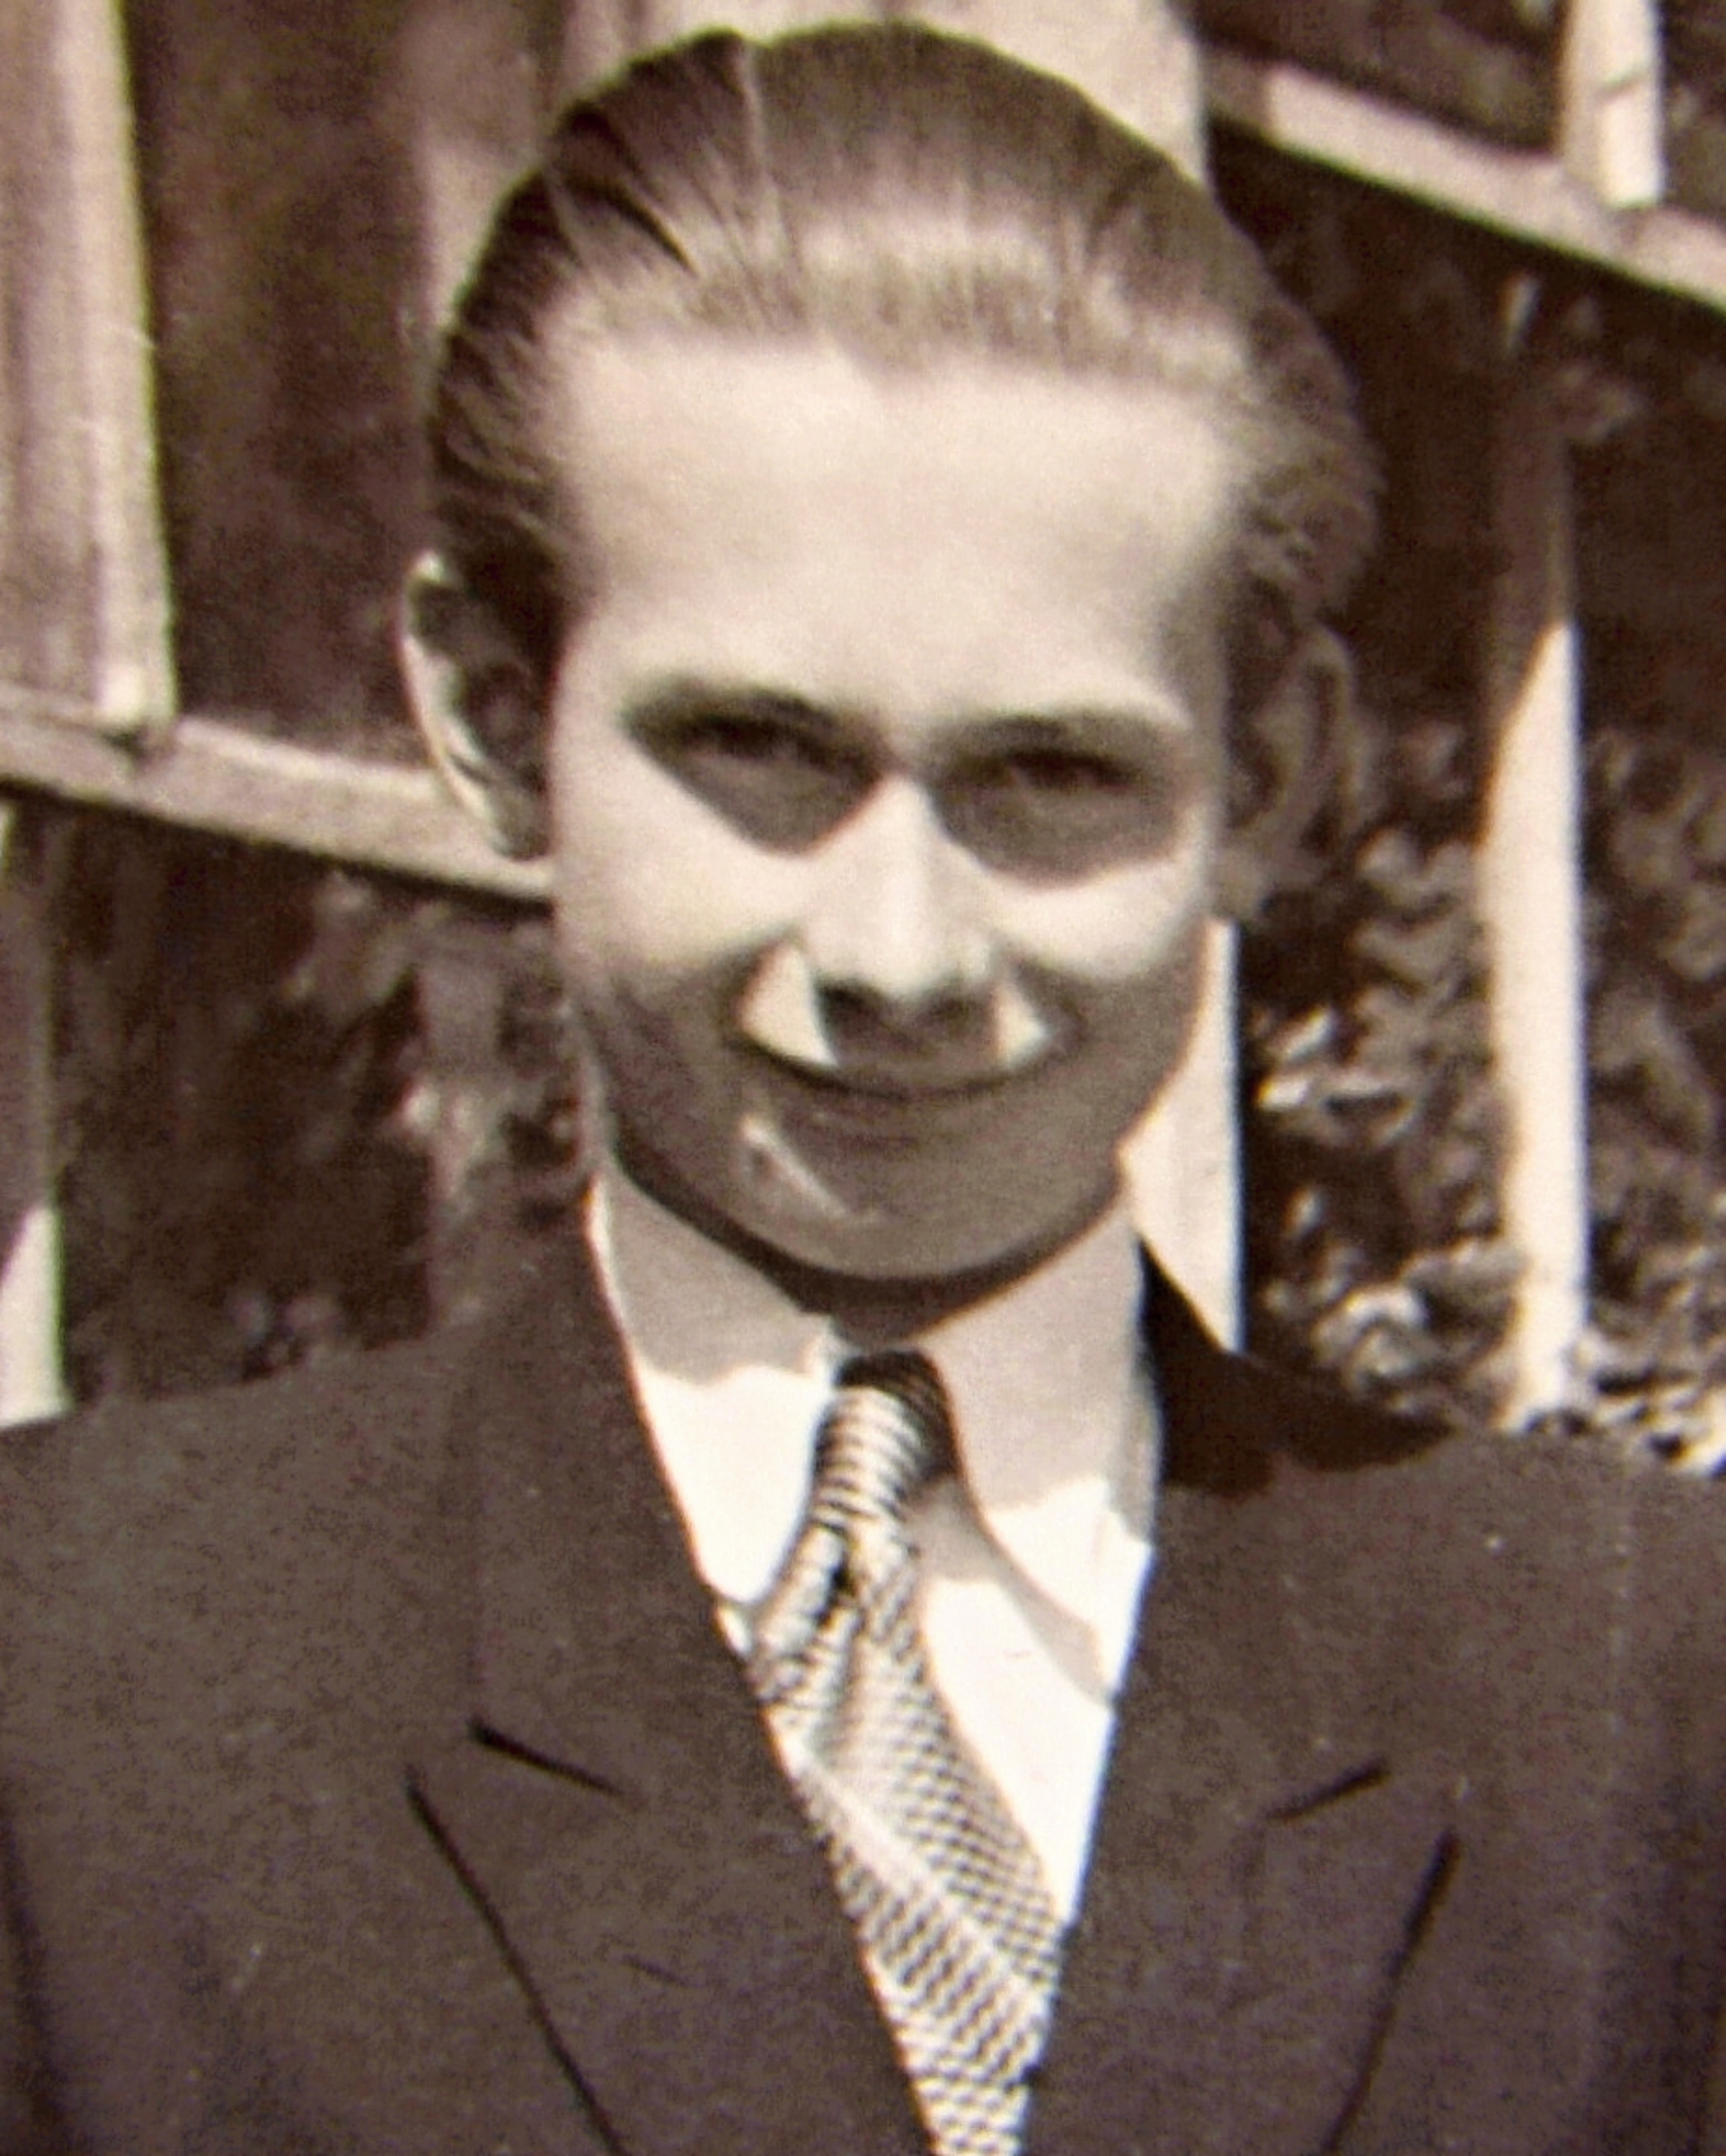 Erik Navara as a young man